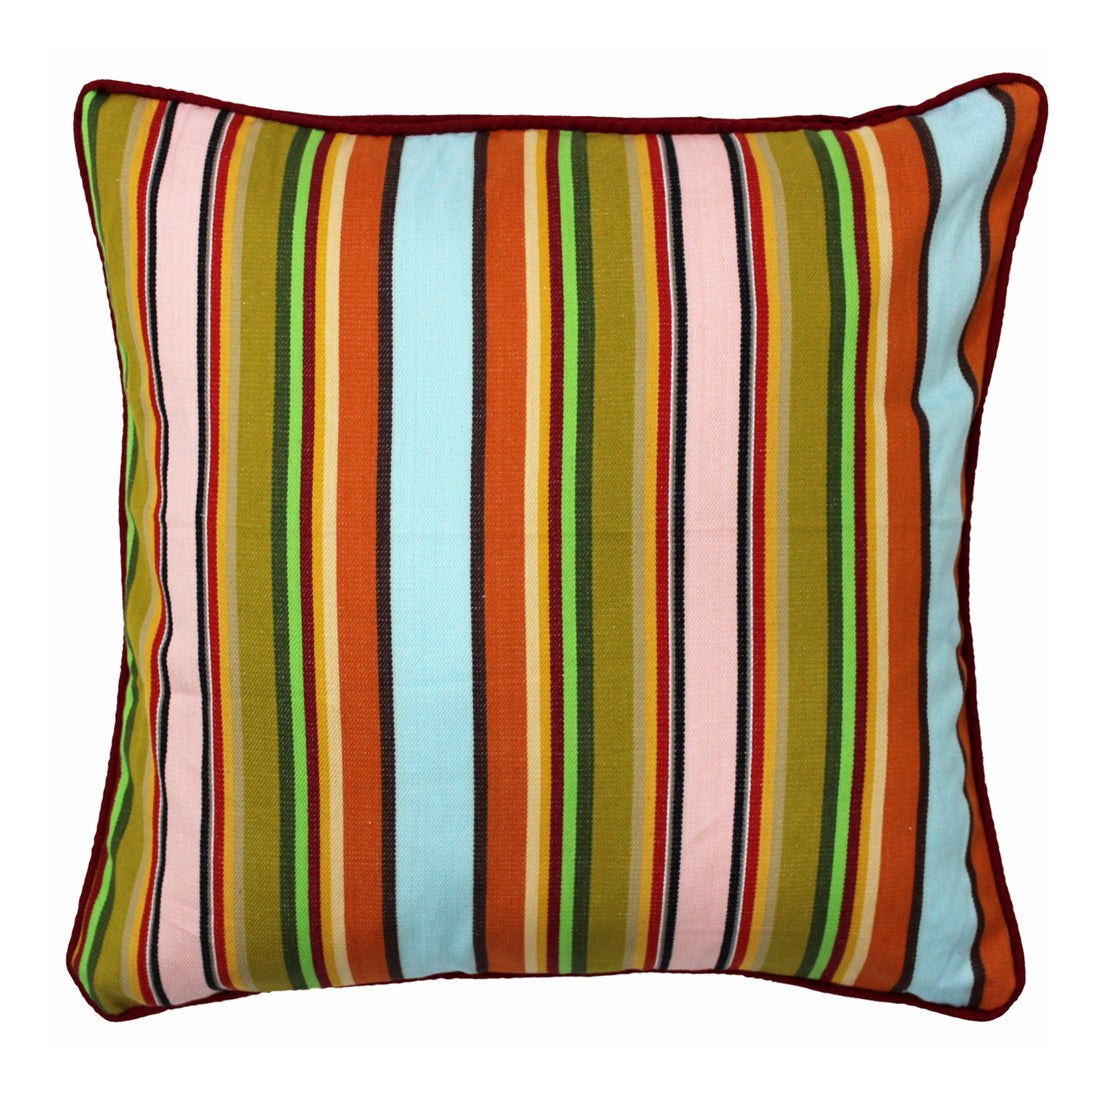 ALPHA Woven Cotton Stripes 2 Pcs Cushion Cover set - Multicolor